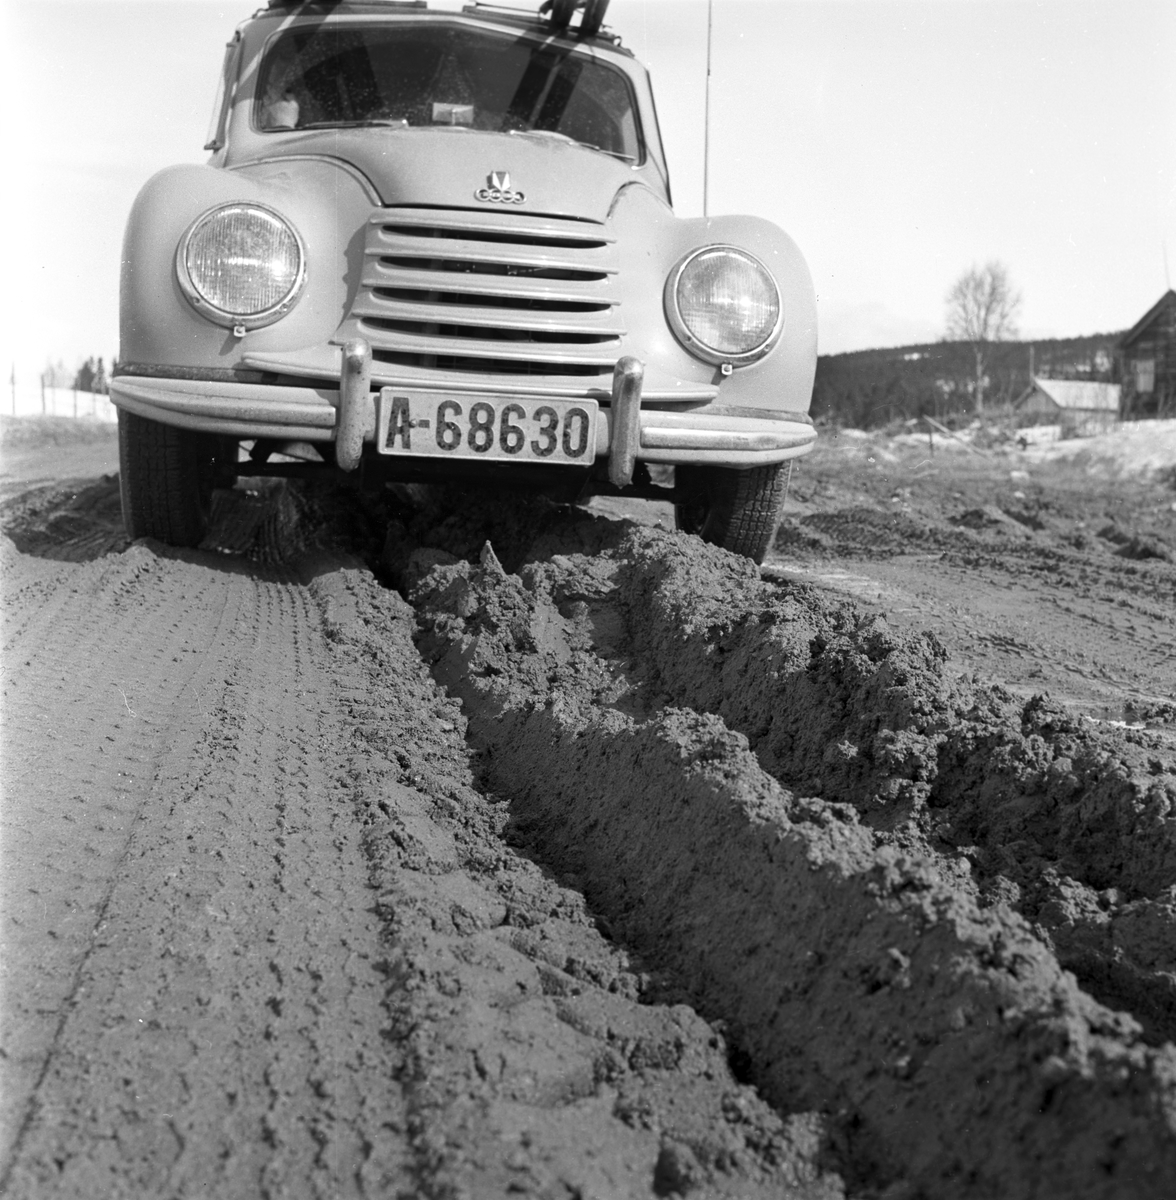 Serie. Teleløsning på veiene i Østerdalen. Fotografert april 1955.

